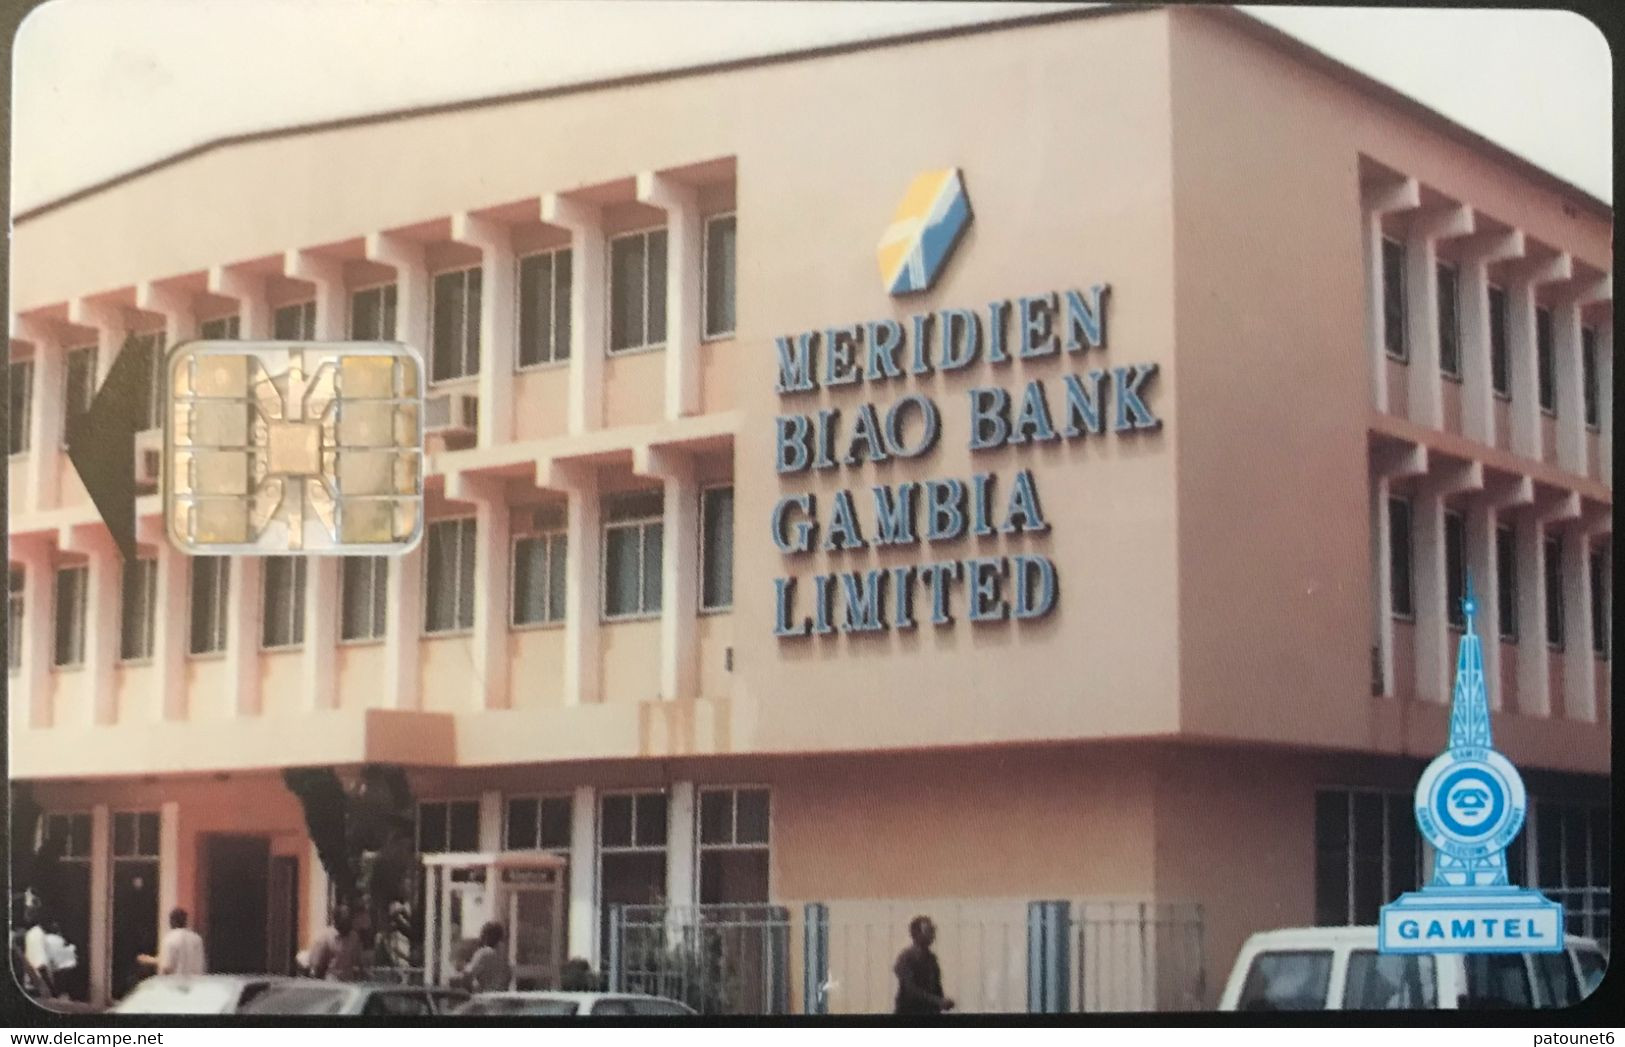 GAMBIE  -   Phonecard  -  GAMTEL  -  SC7 - Meridien Biao Bank  -  60 Units - Gambie